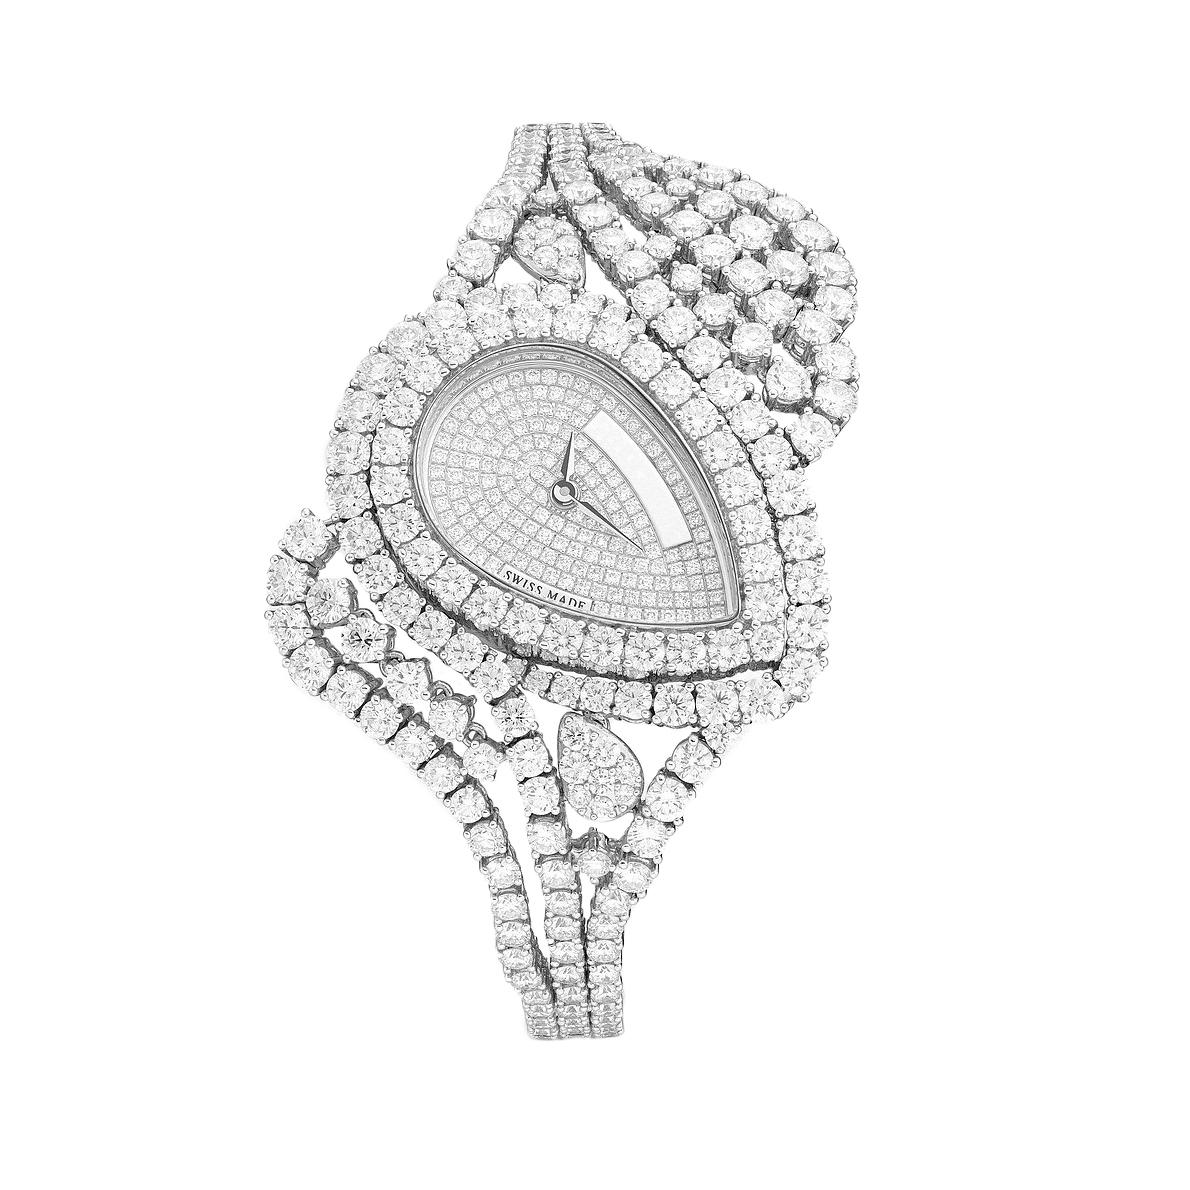 Uhr aus Weißgold 18kt mit 478 Diamanten 20,22 ct auf Gehäuse, Zifferblatt und Armband Quarzwerk besetzt.

Wir übernehmen keine Garantie für das Funktionieren dieser Uhr.